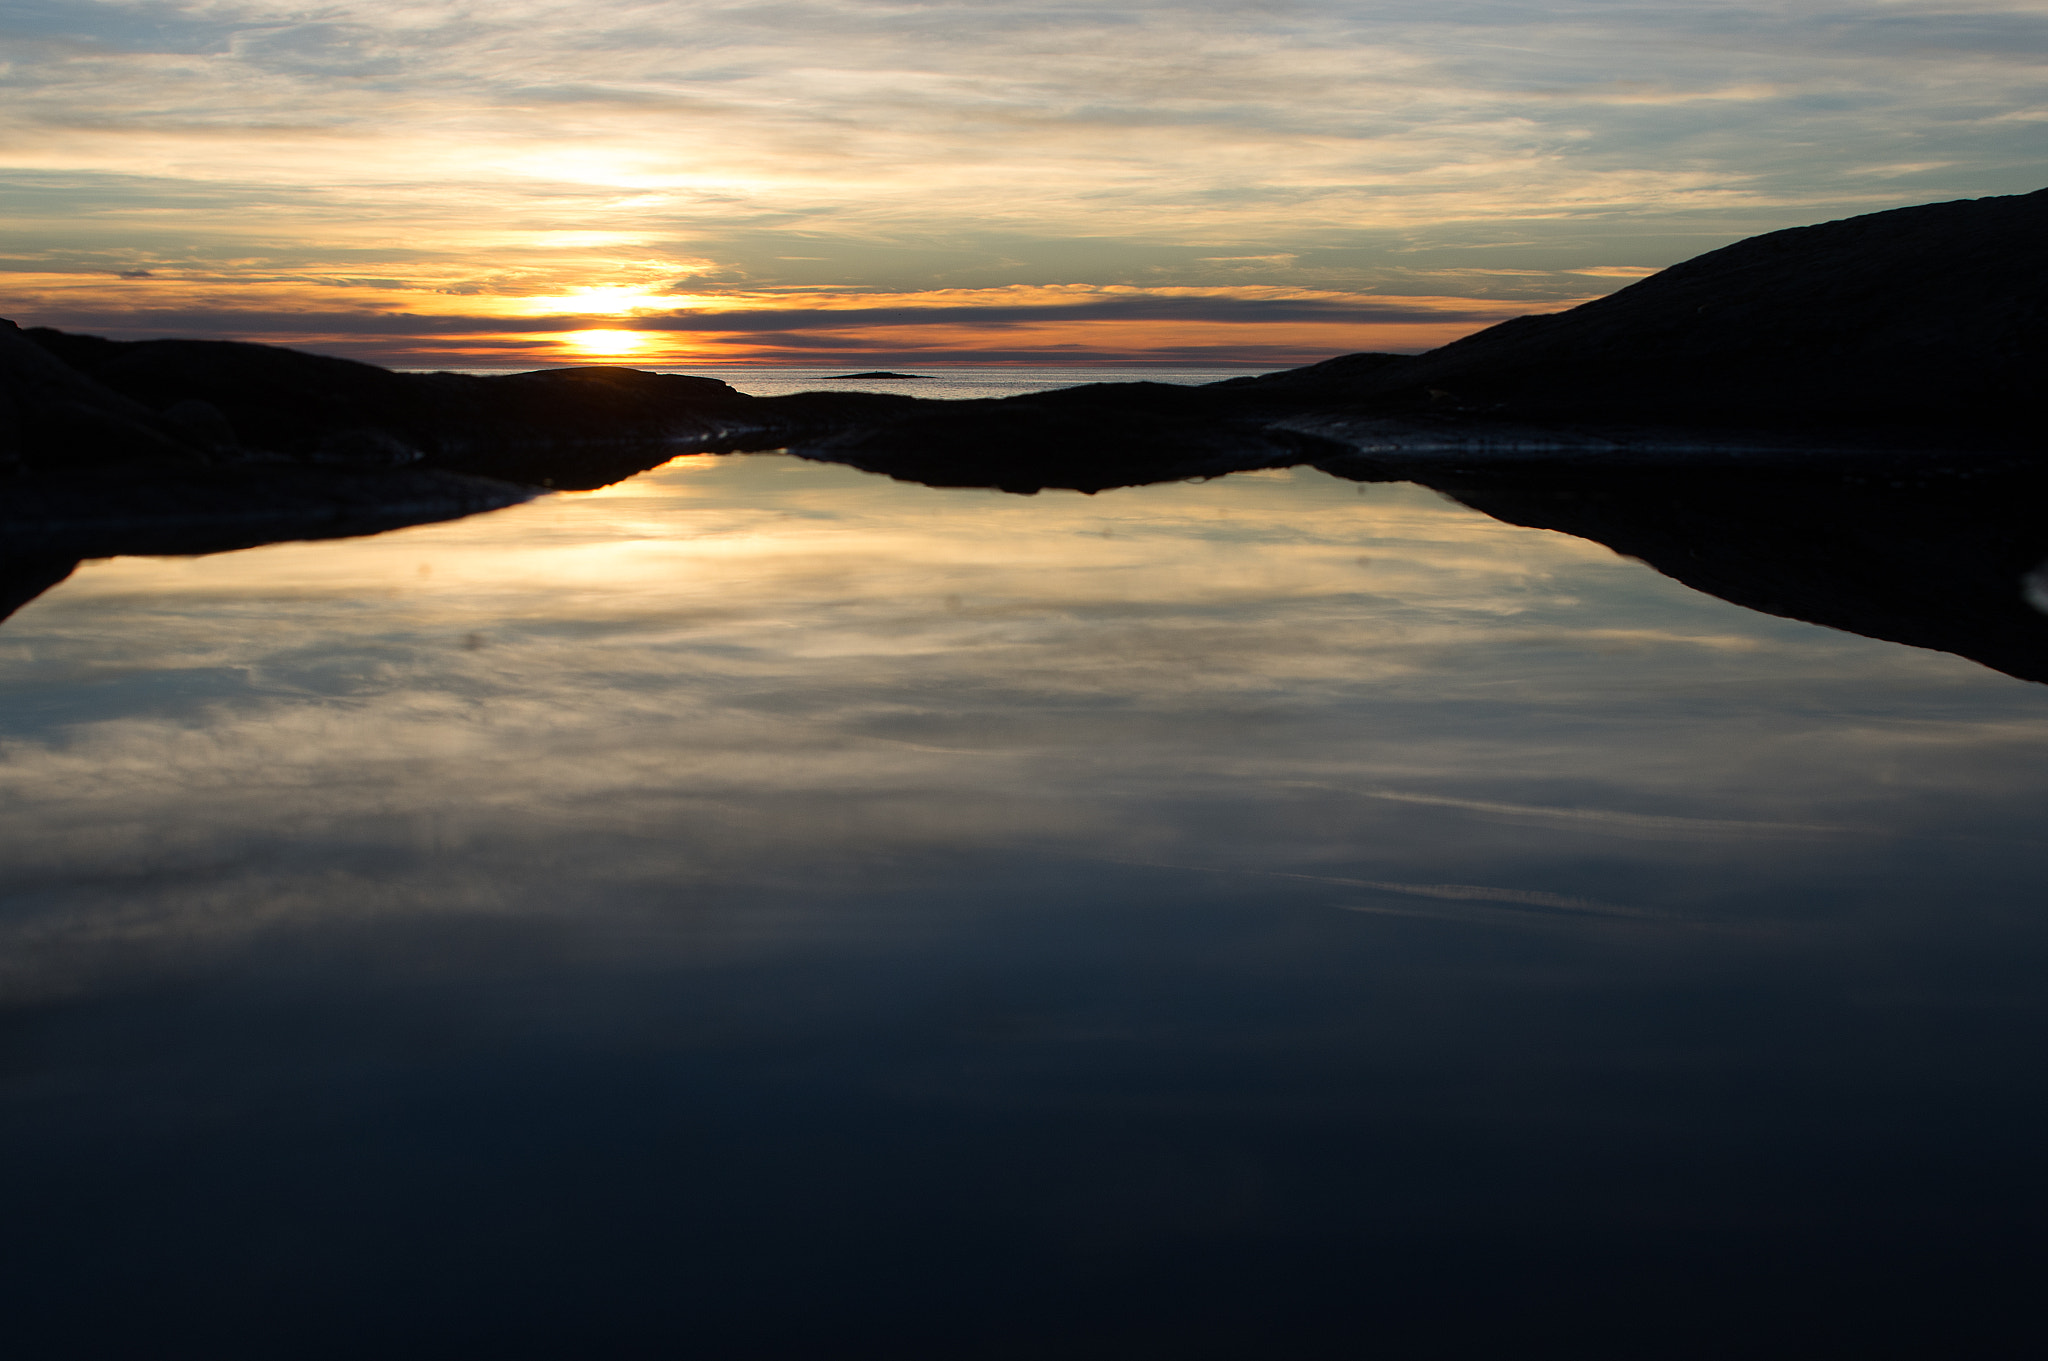 Pentax K-3 sample photo. Reflection sunrise photography